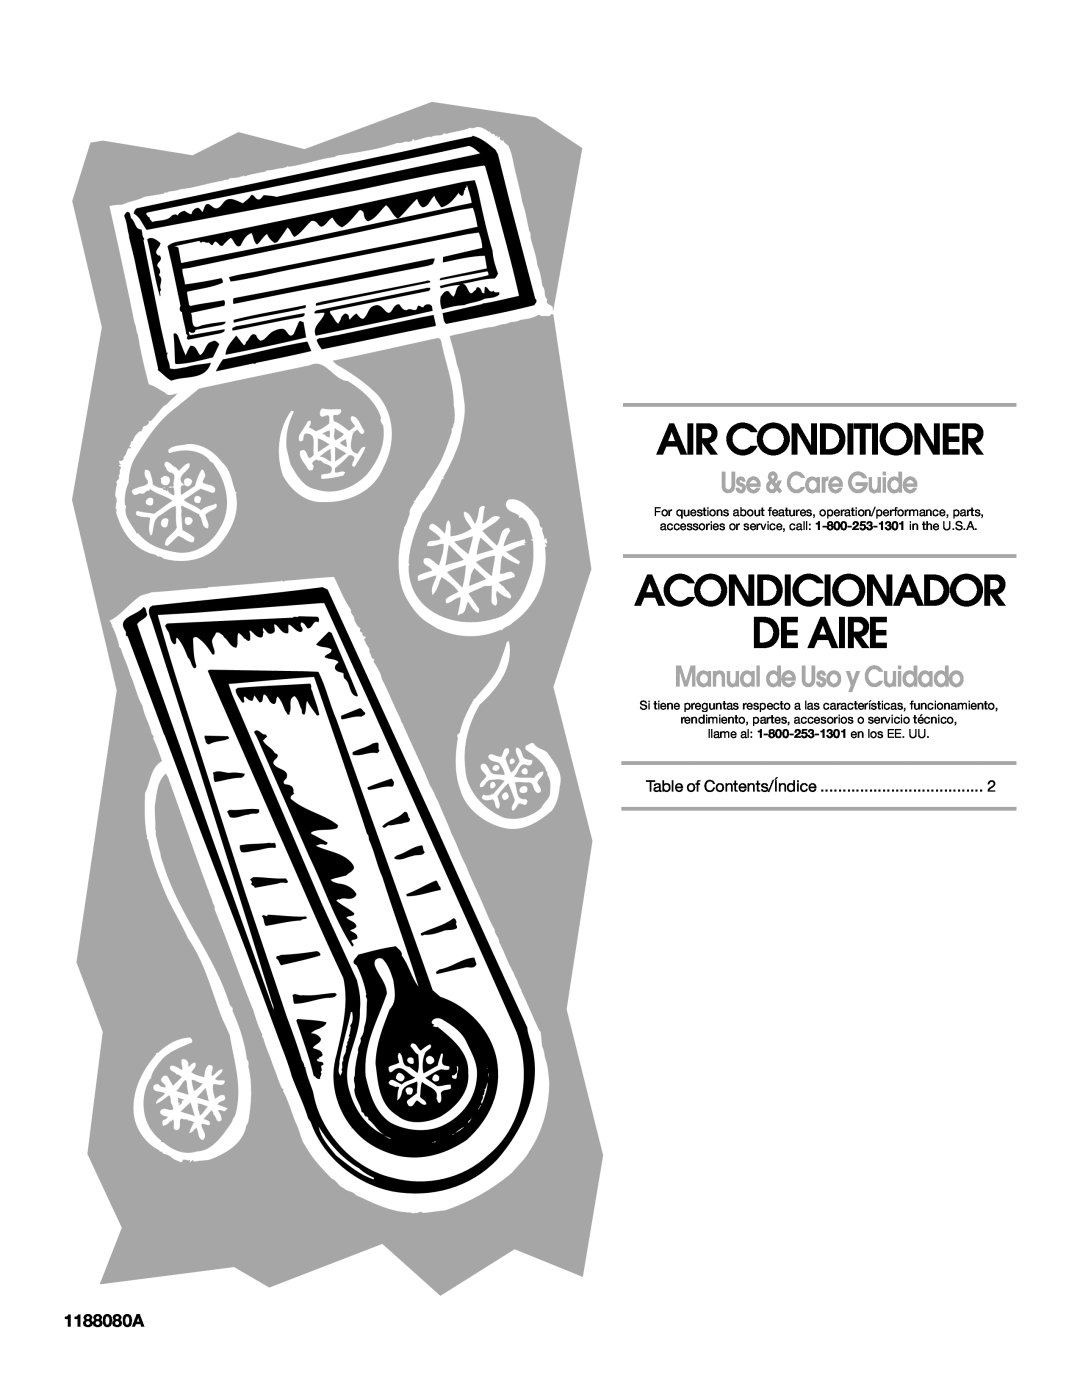 Whirlpool ACE082XR0 manual 1188080A, Air Conditioner, Acondicionador De Aire, Use & Care Guide, Manual de Uso y Cuidado 